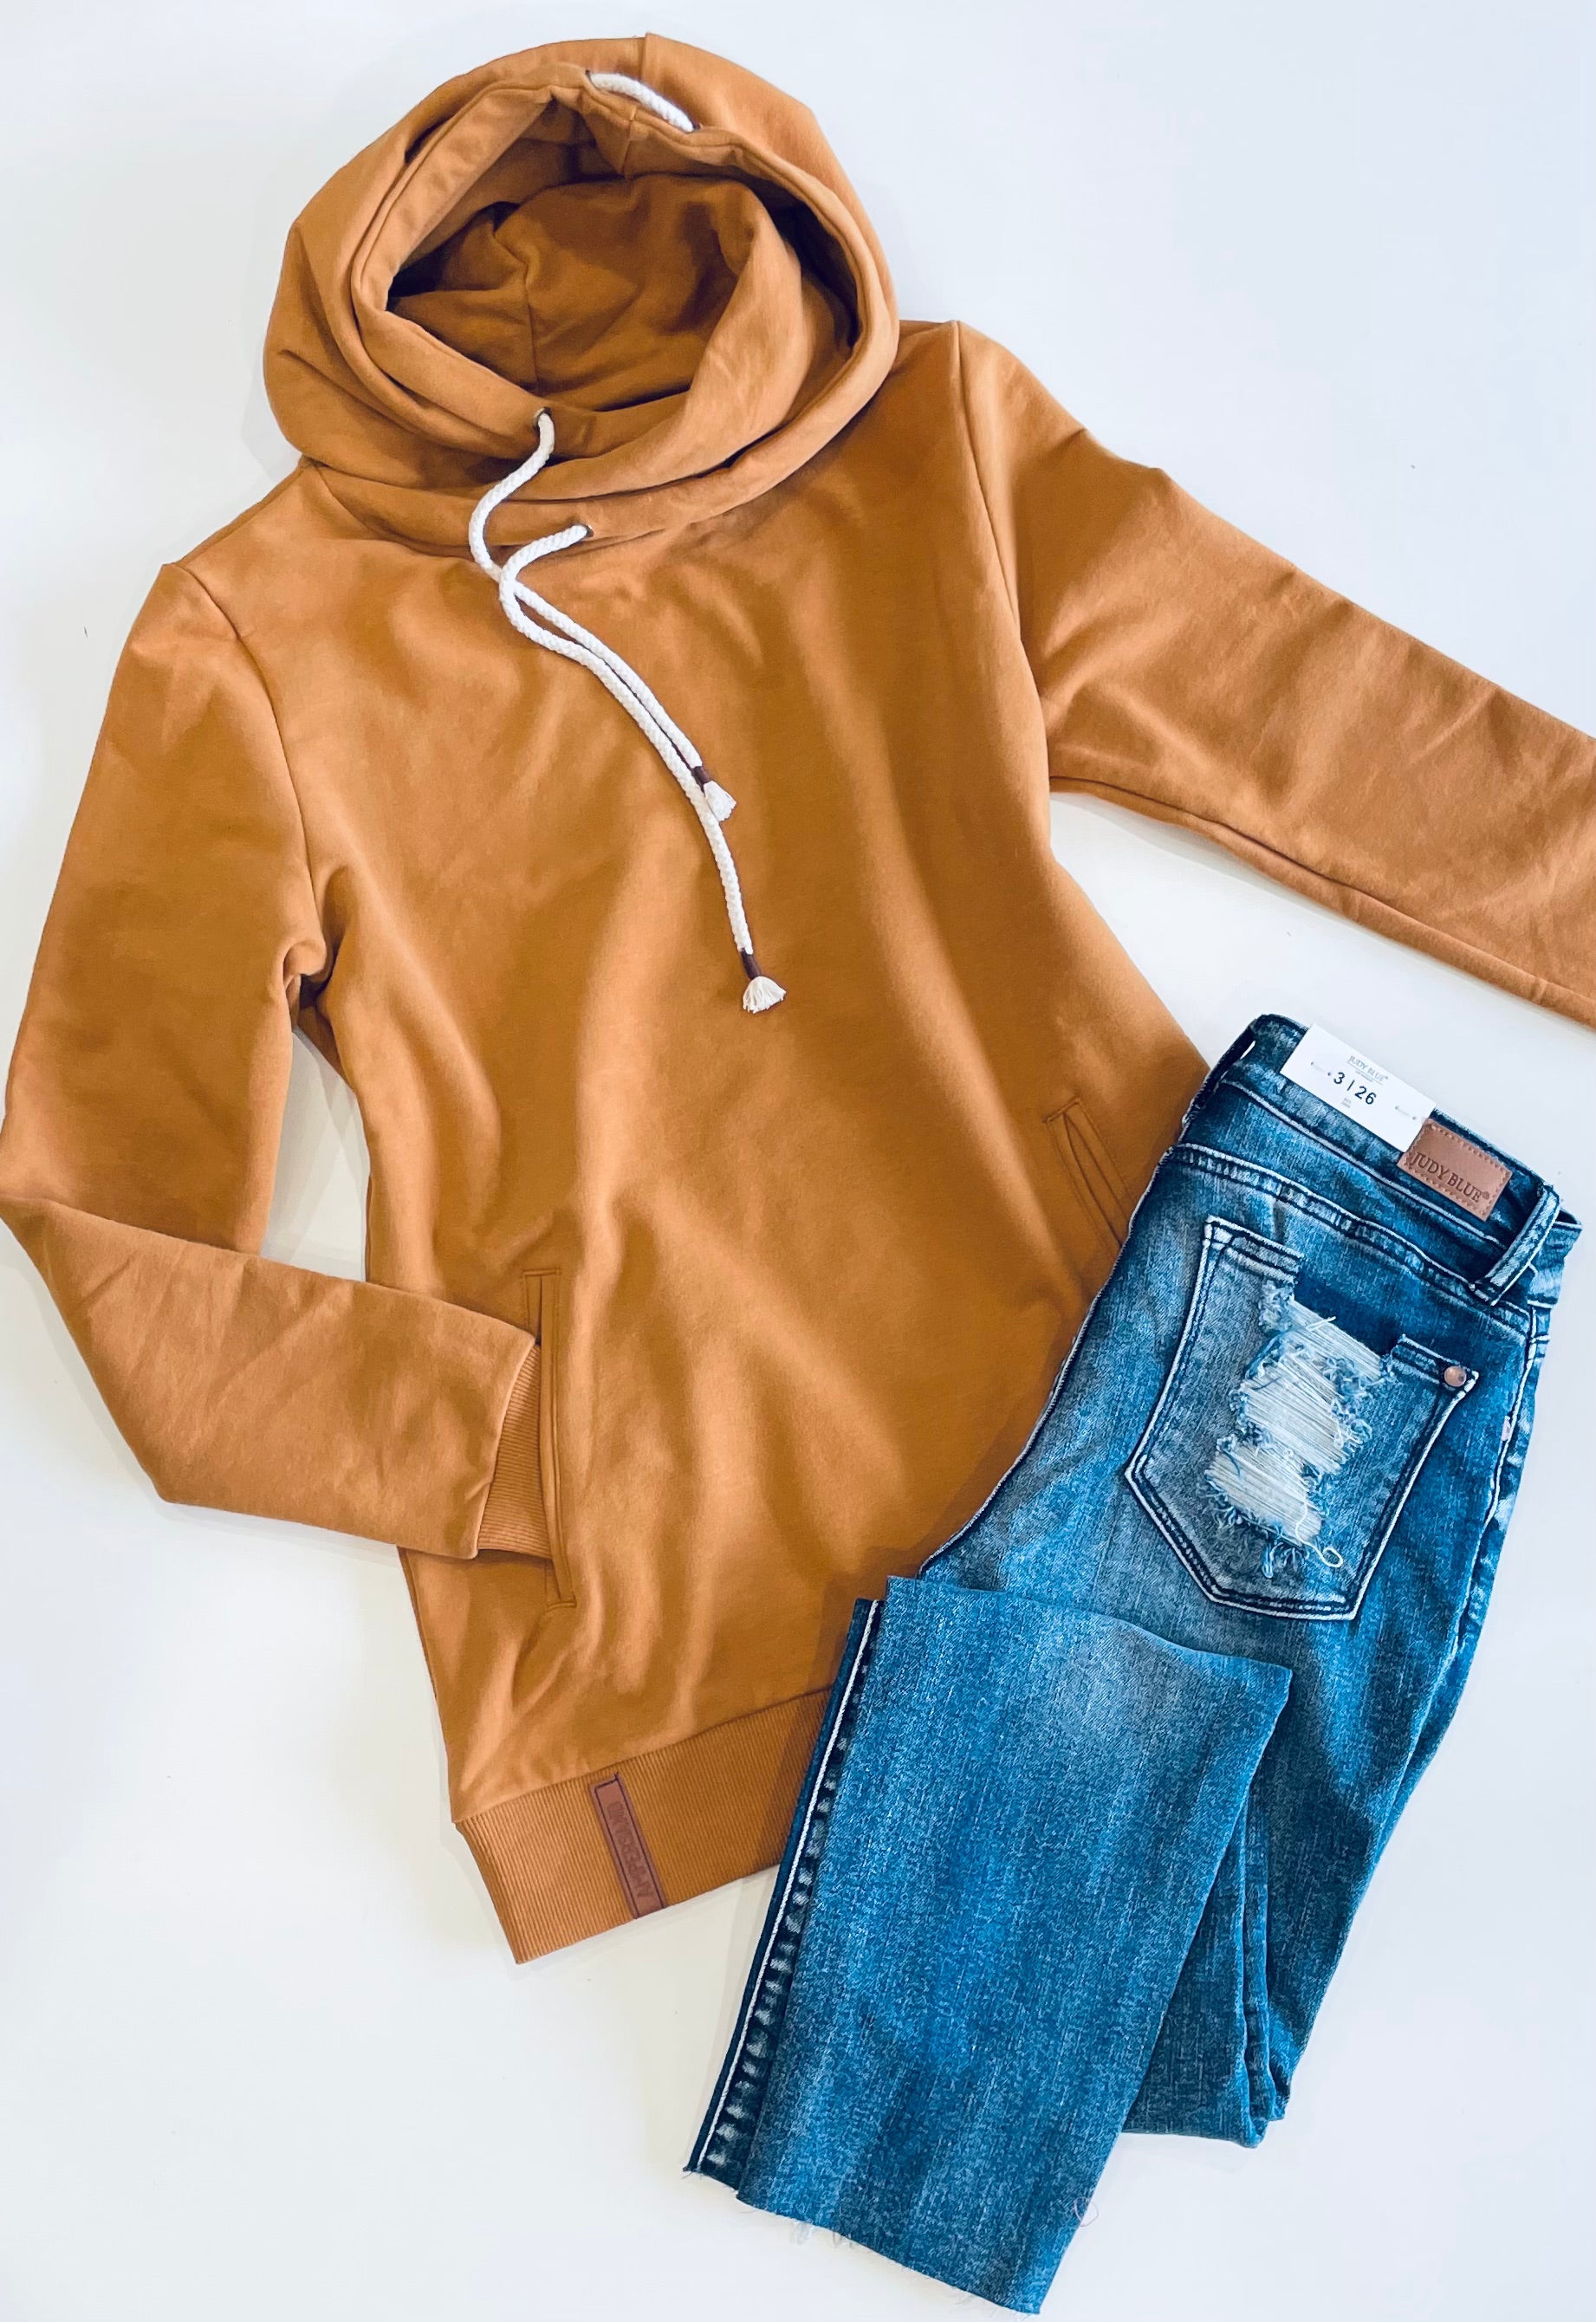 Ampersand Avenue Single Hood Sweatshirt - Maple